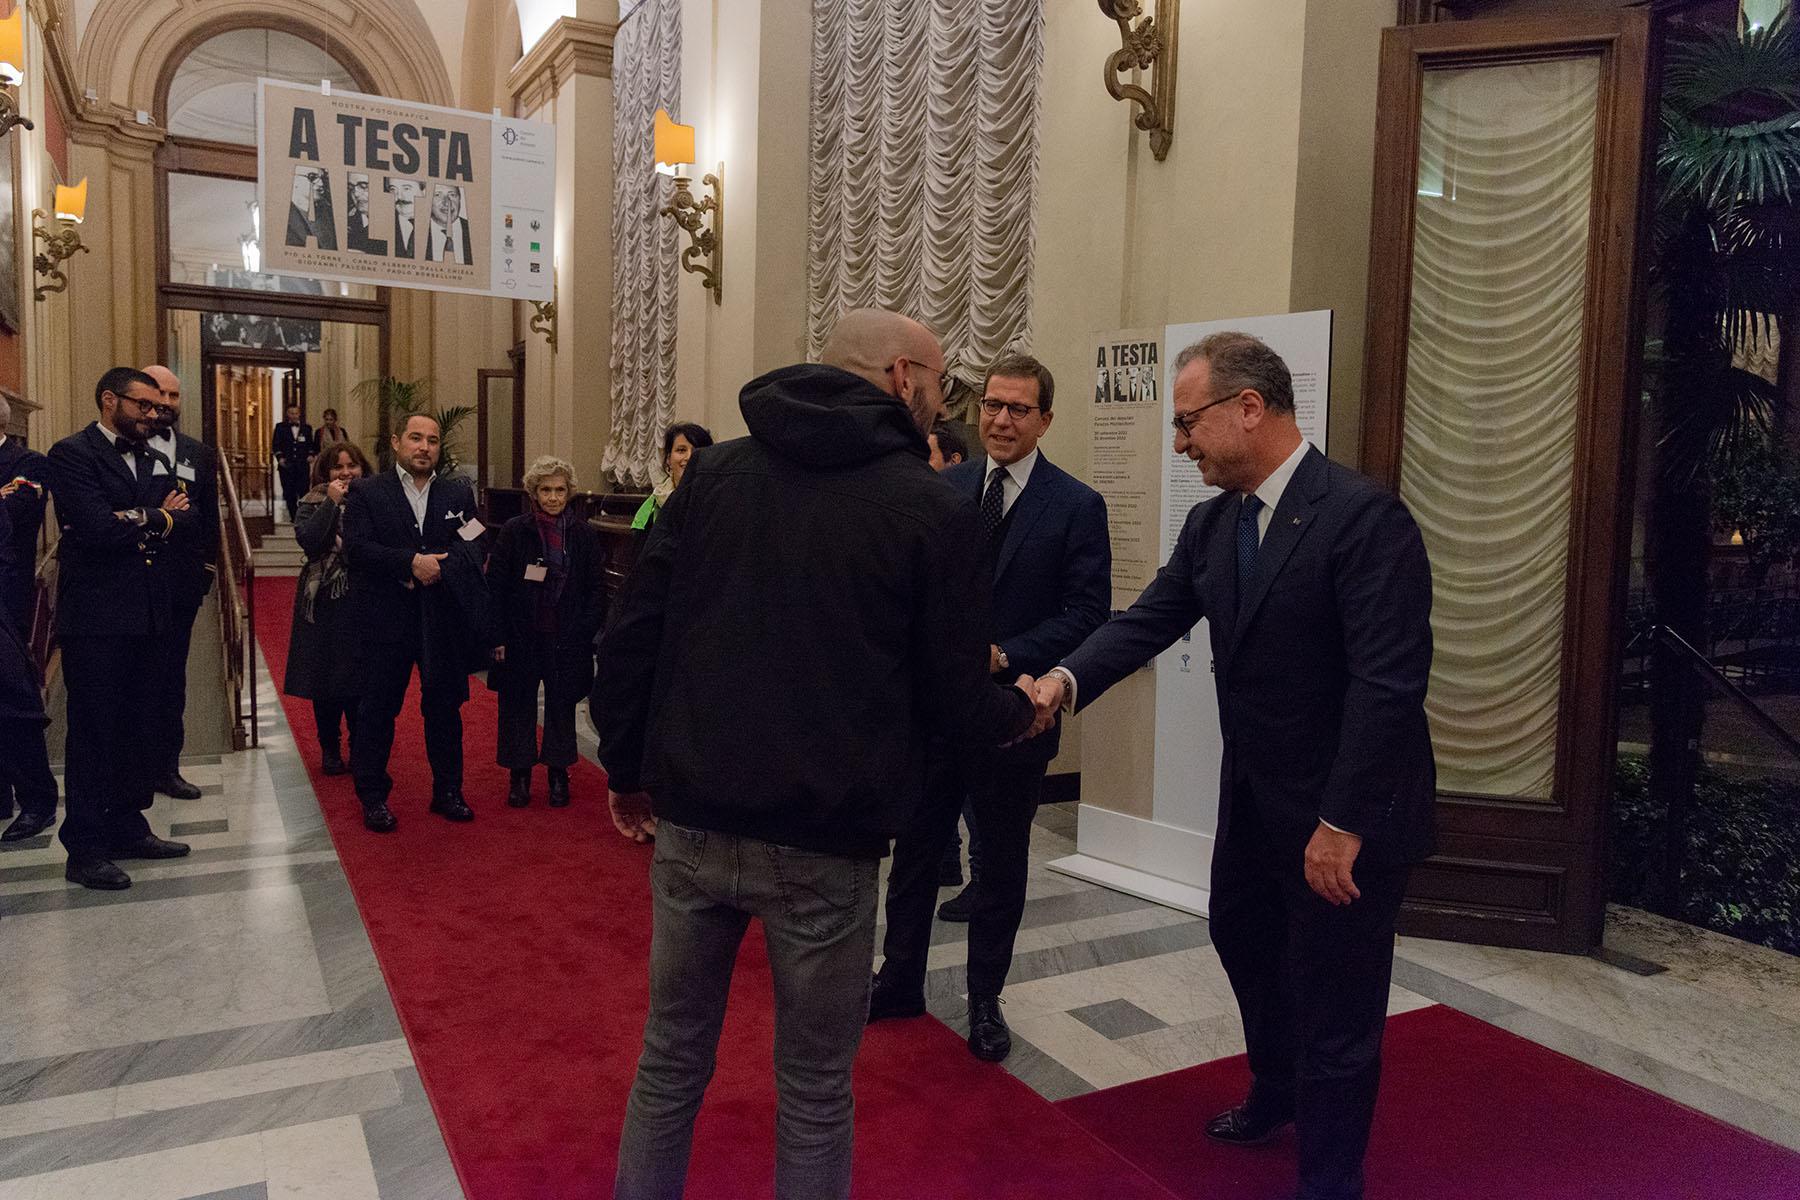 Il Vicepresidente della Camera dei deputati, Giorgio Mulè, accoglie i visitatori